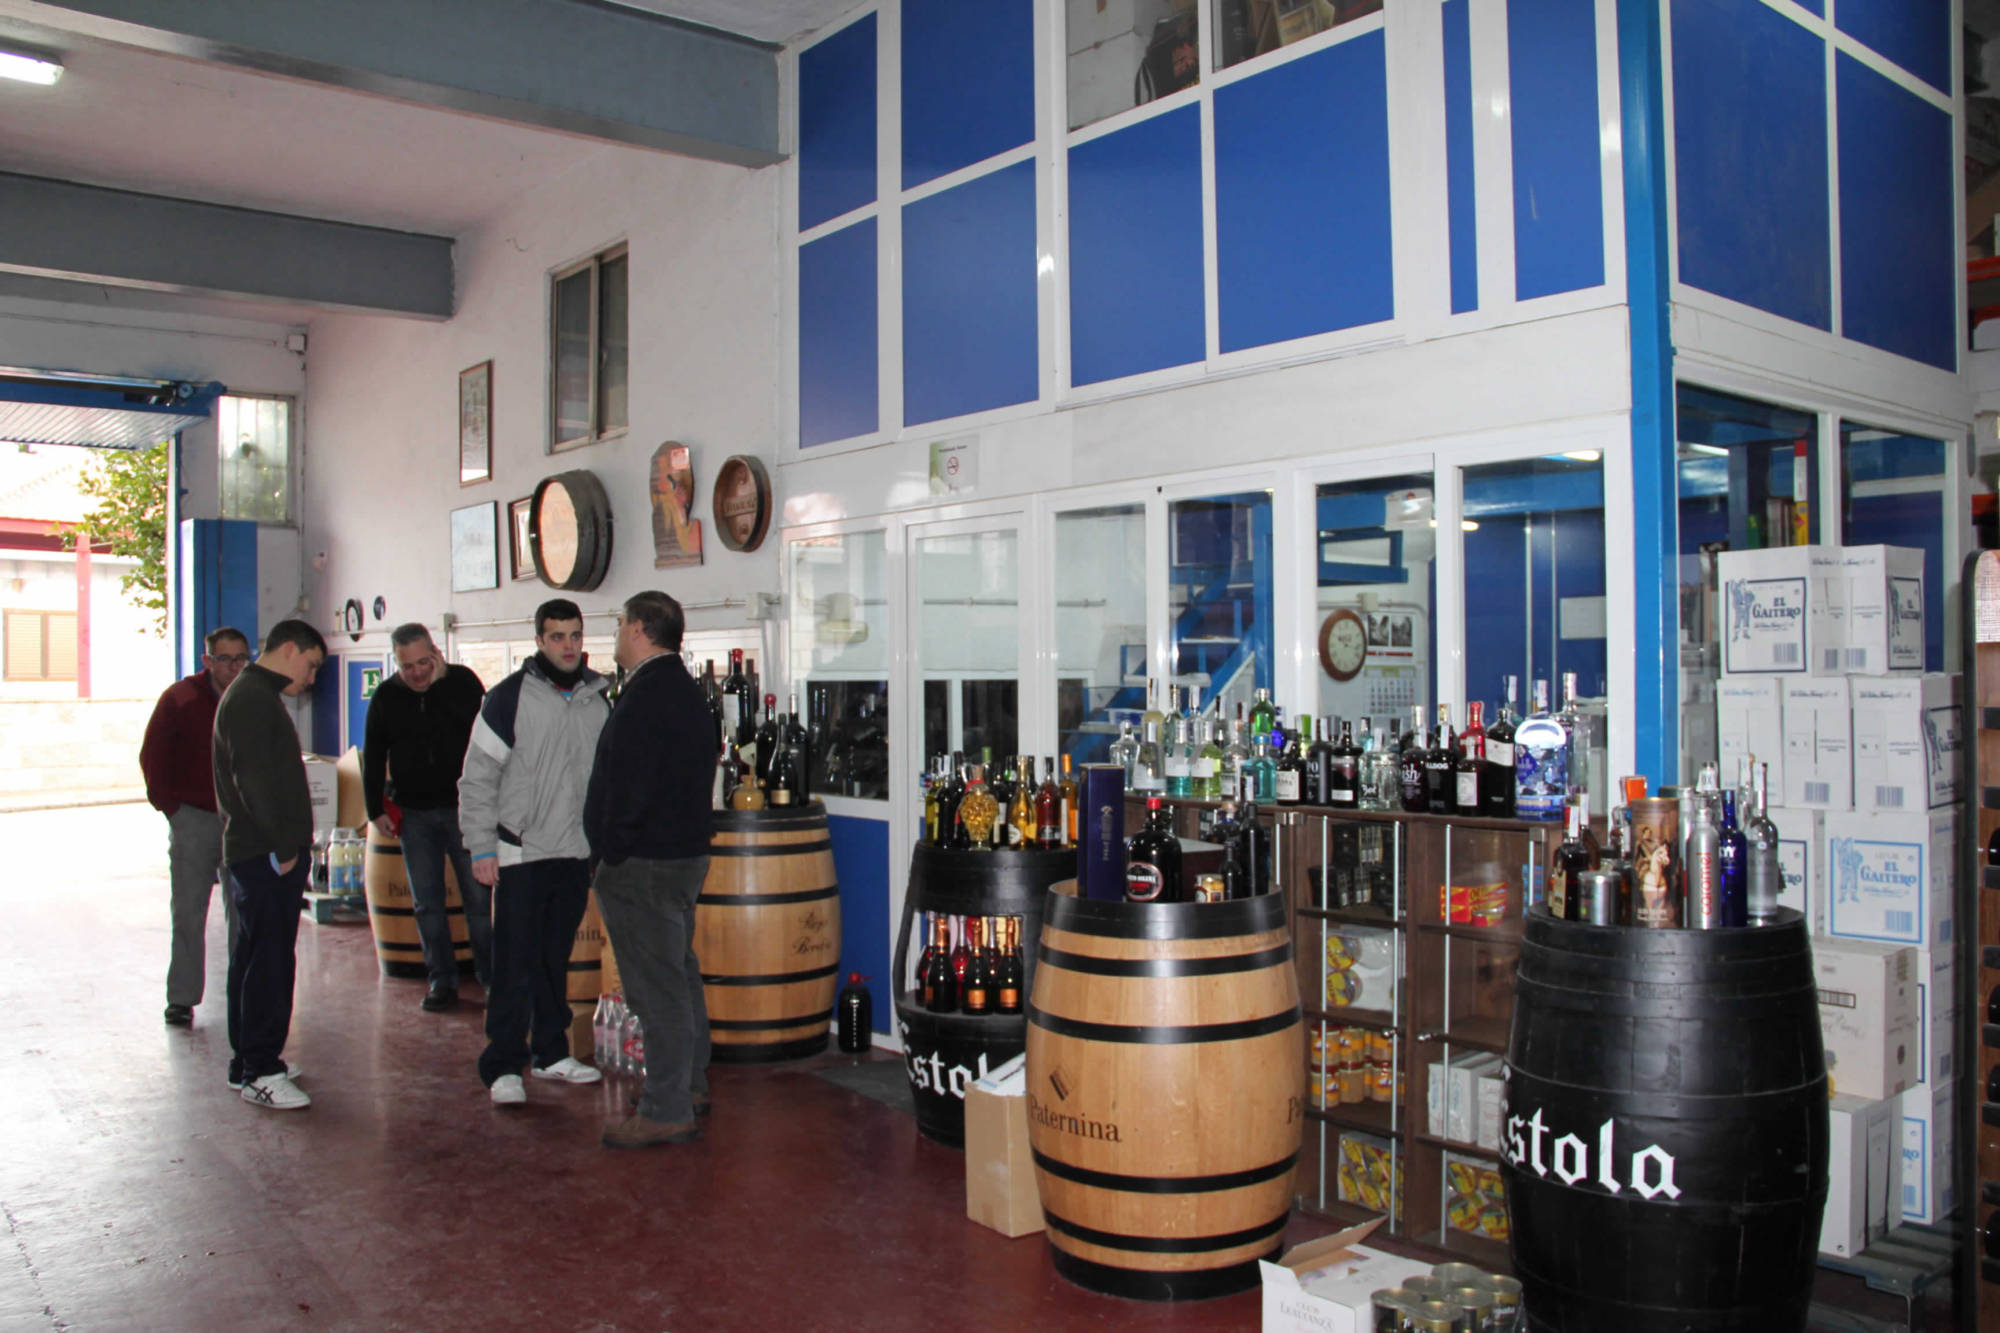 Distribuidor de vinos, cervezas, conservas, licores, alimentos, dulces, Valle del Tiétar sur de Gredos